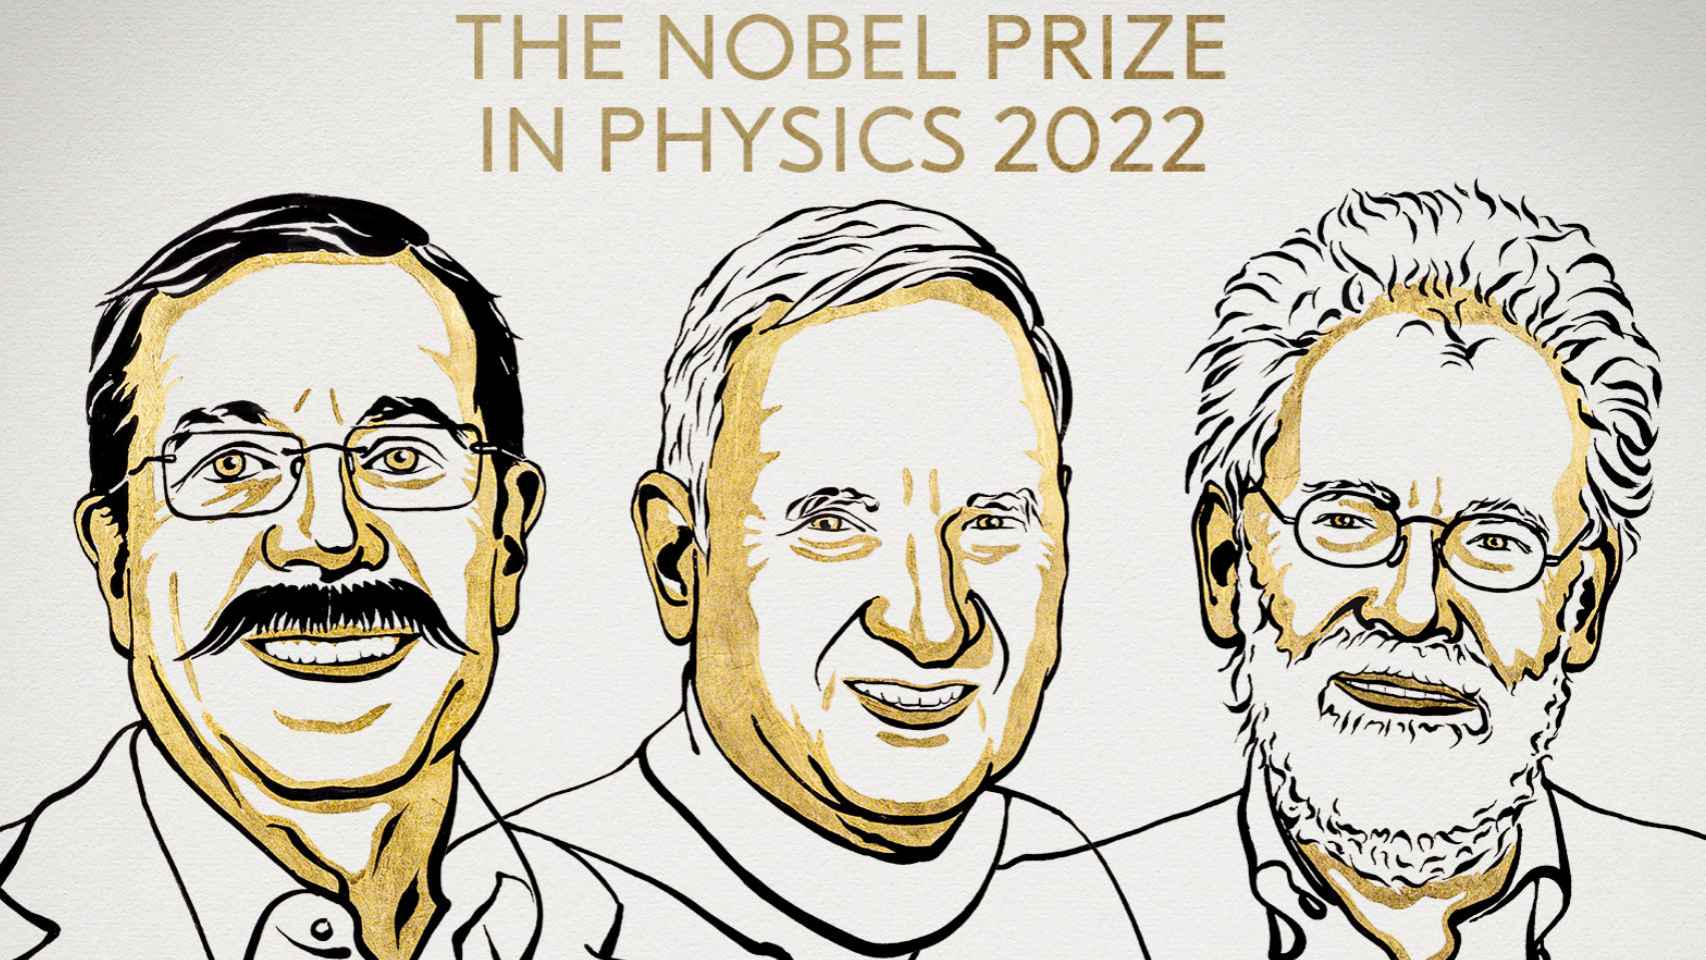 Los Nobel de Física 2022 Alain Aspect, John F. Clauser y Anton Zeilinger.  Ilustración: Niklas Elmehed/Nobel Prize Outreach